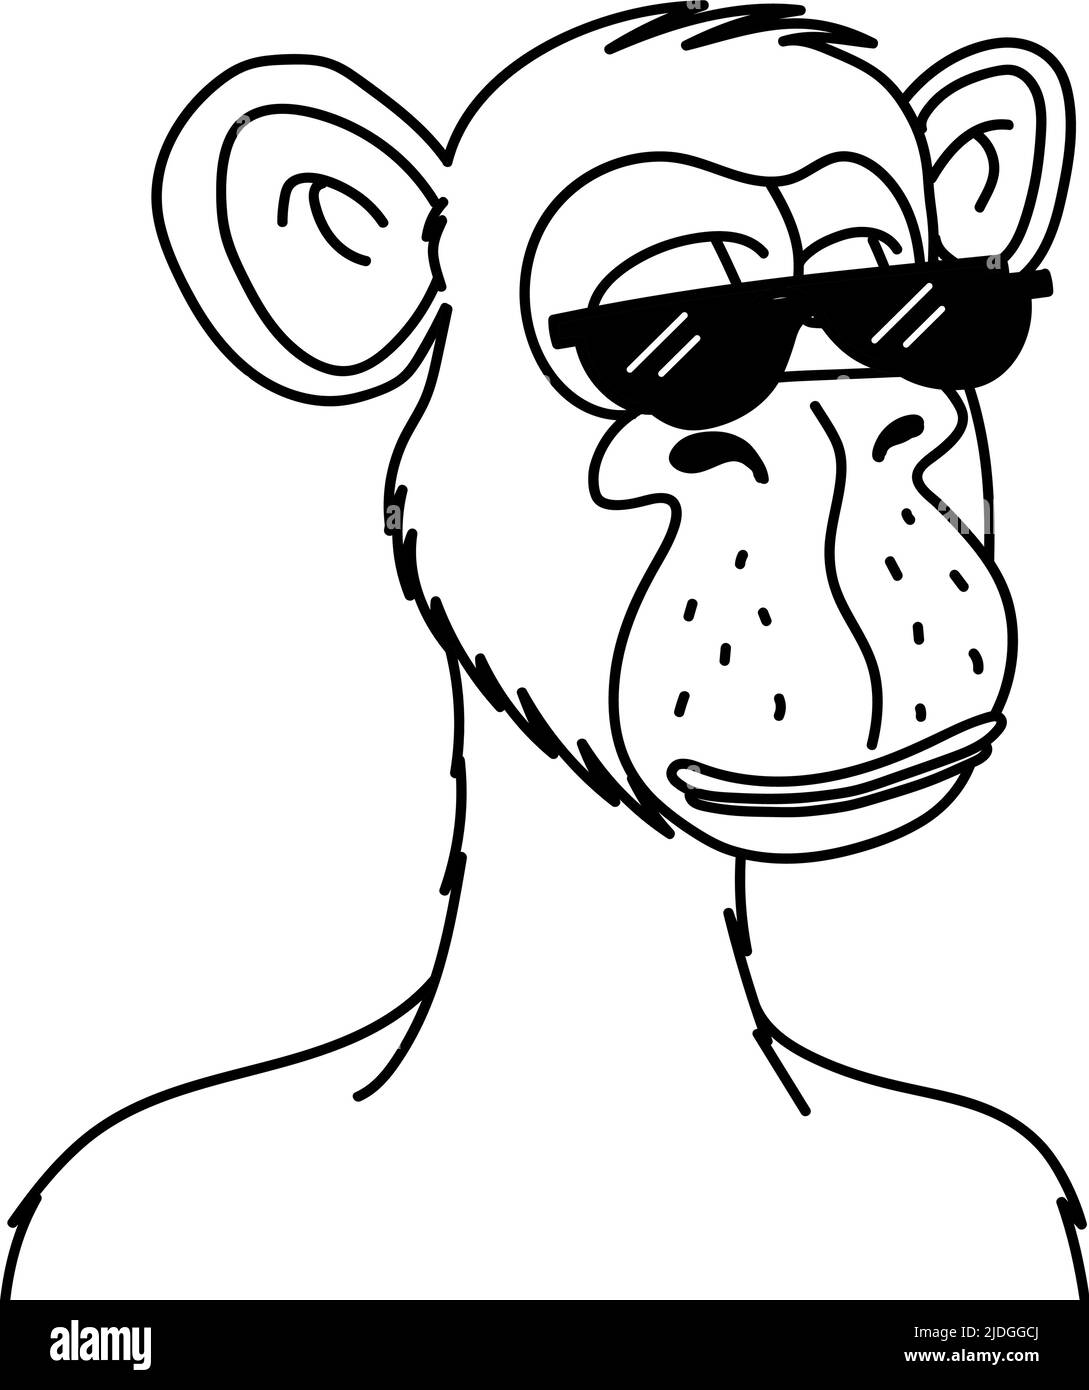 Singe ennuyé dans des lunettes de soleil NFT isolé sur fond blanc. Illustration vectorielle singe blockchain à jeton non fongible dans un style d'esquisse Illustration de Vecteur